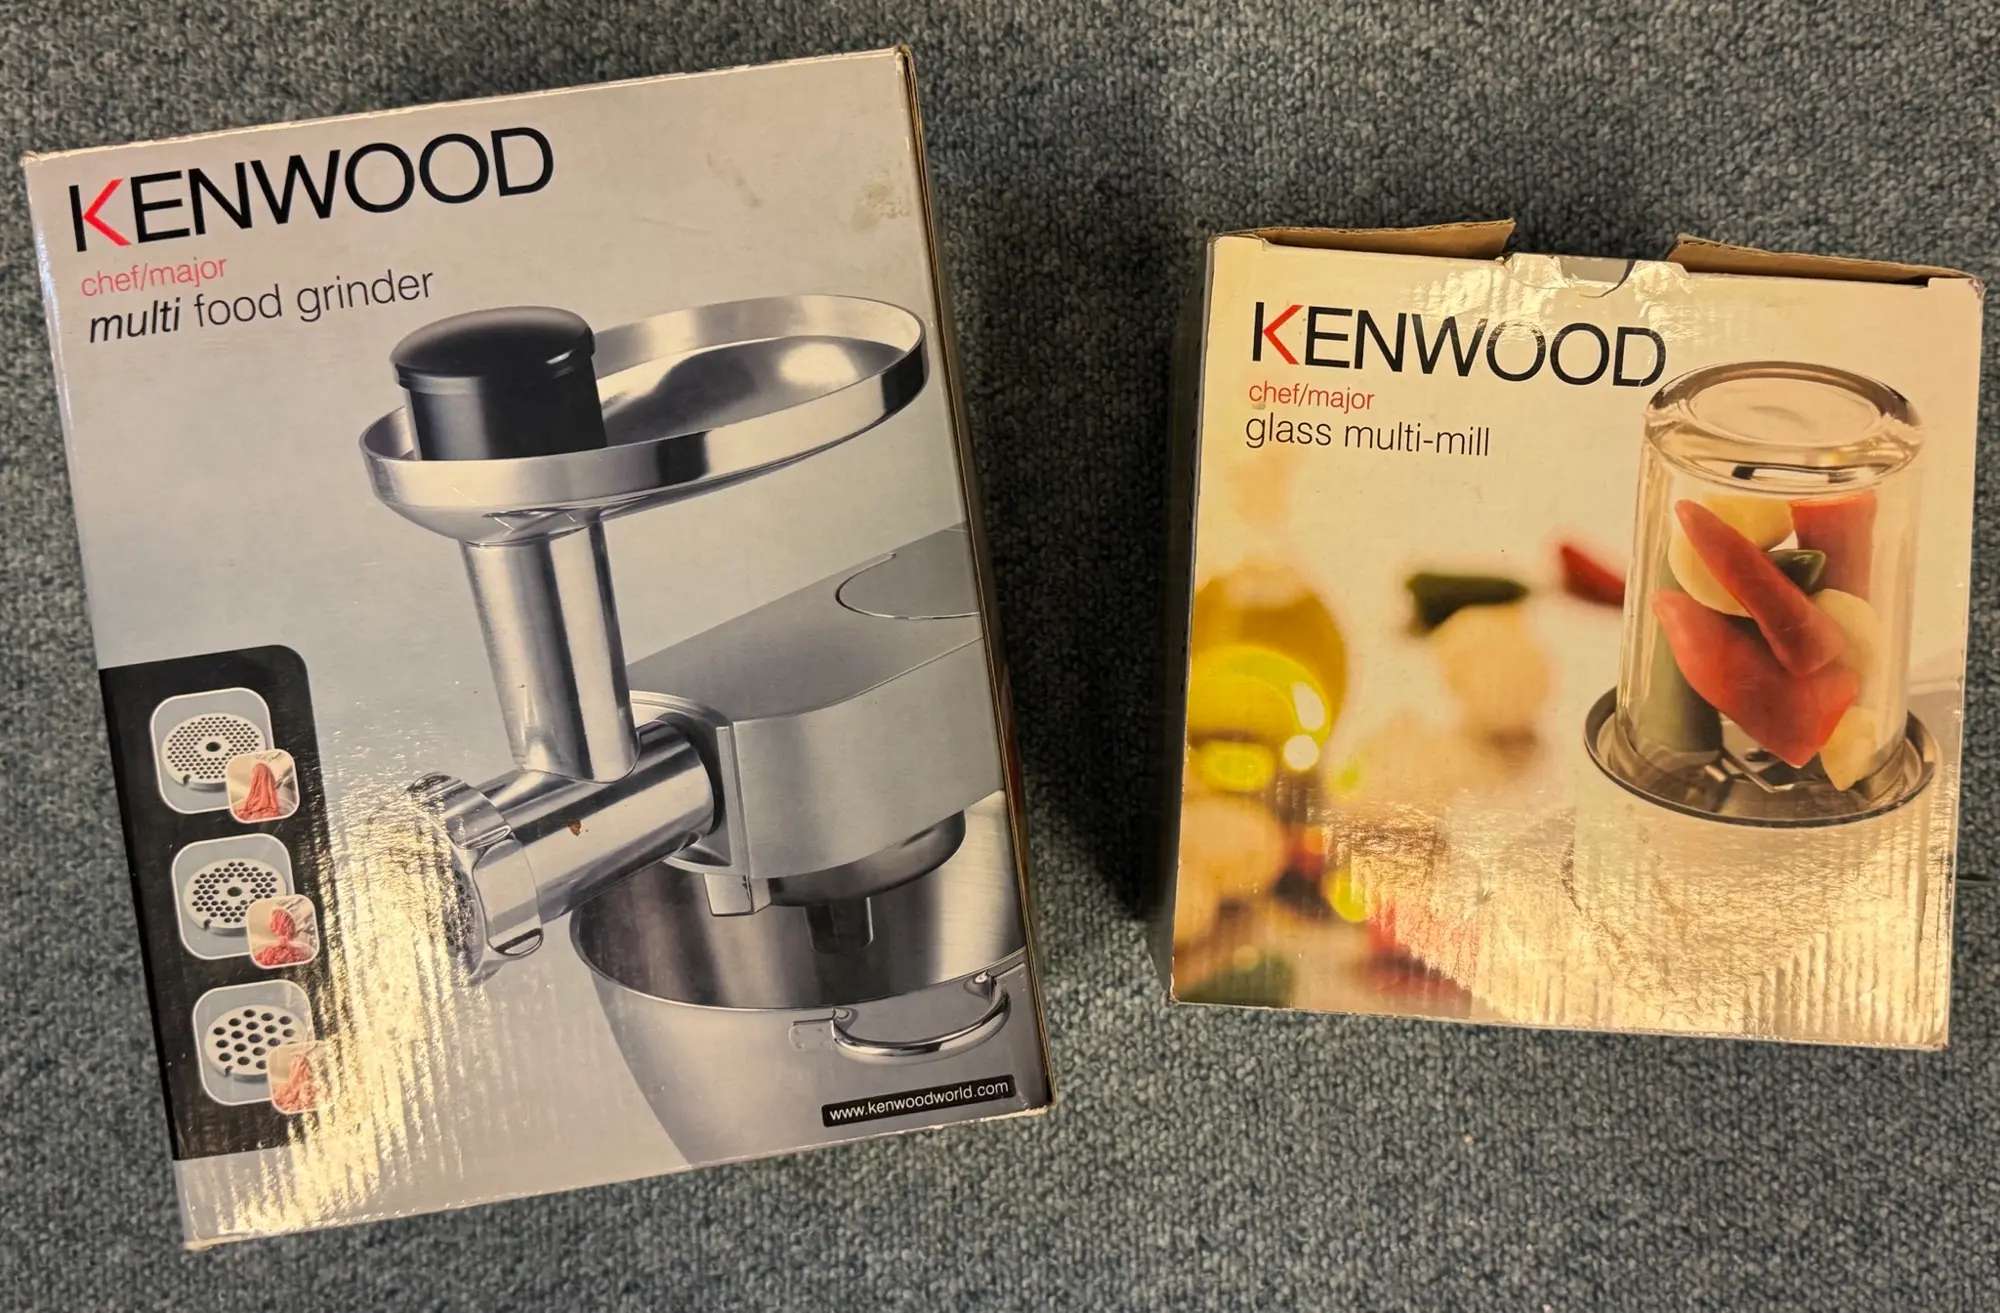 Kenwood køkkenmaskine